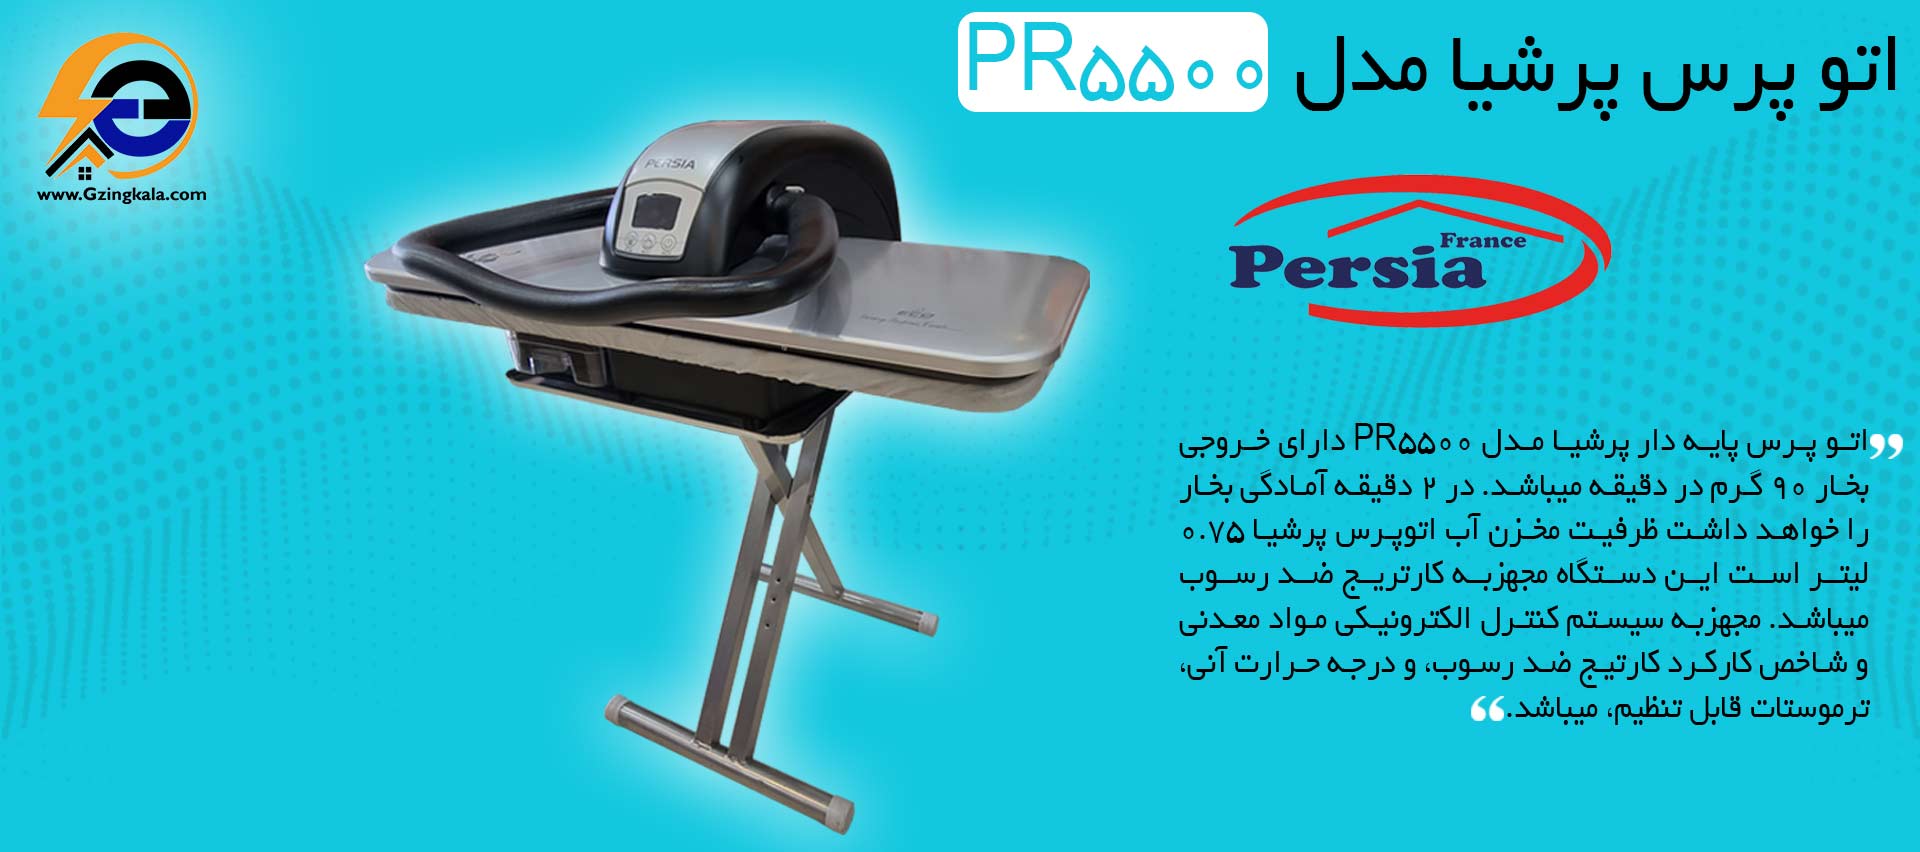 اتو پرس پرشیا مدل PR5500